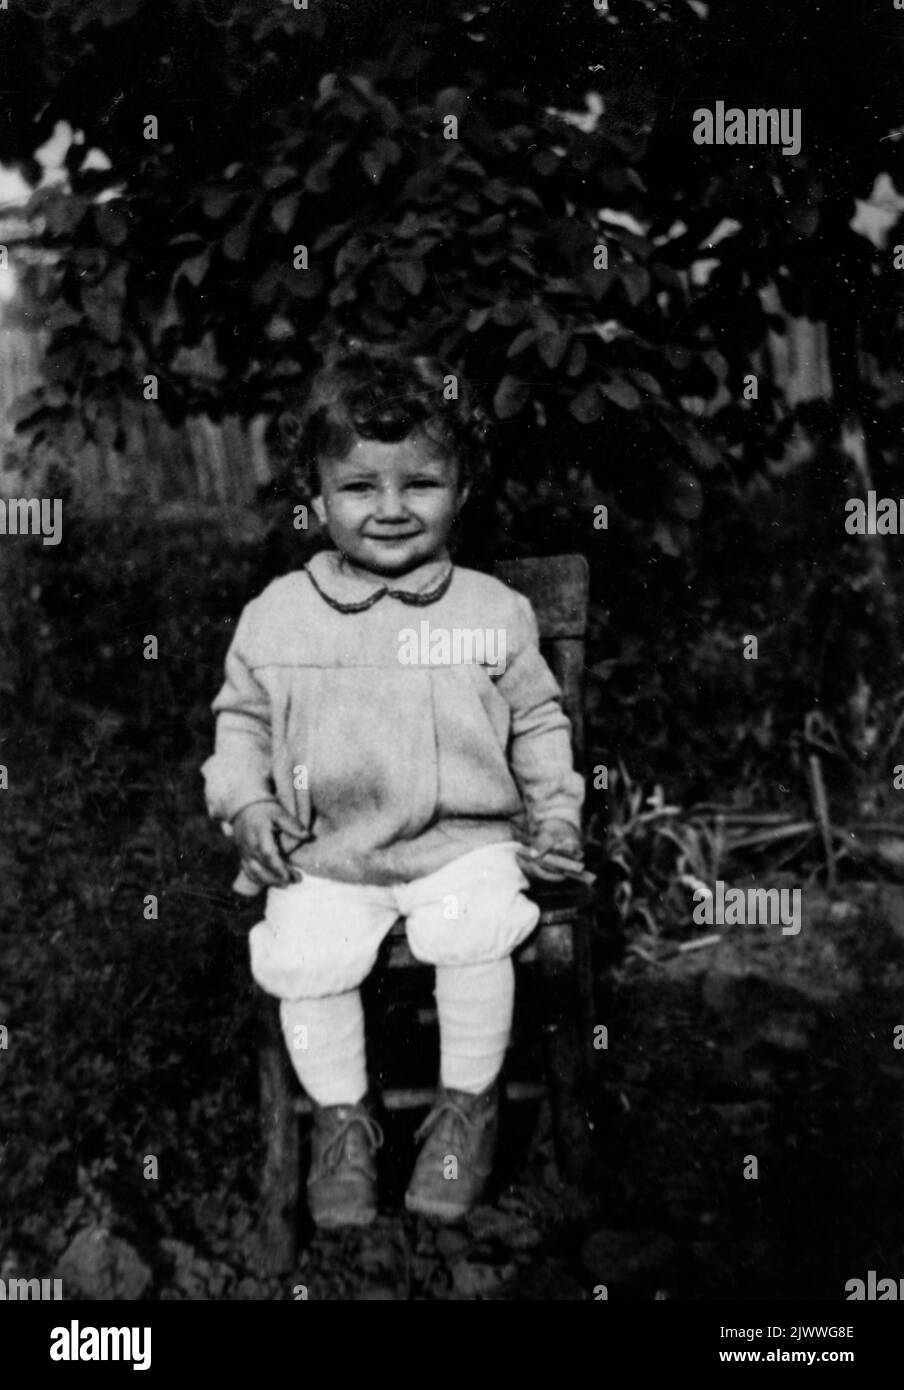 Portrait noir et blanc d'une jeune fille souriante de 3 ans assise sur une chaise en milieu rural, fin 60s, Bulgarie, Europe, Balkans Banque D'Images